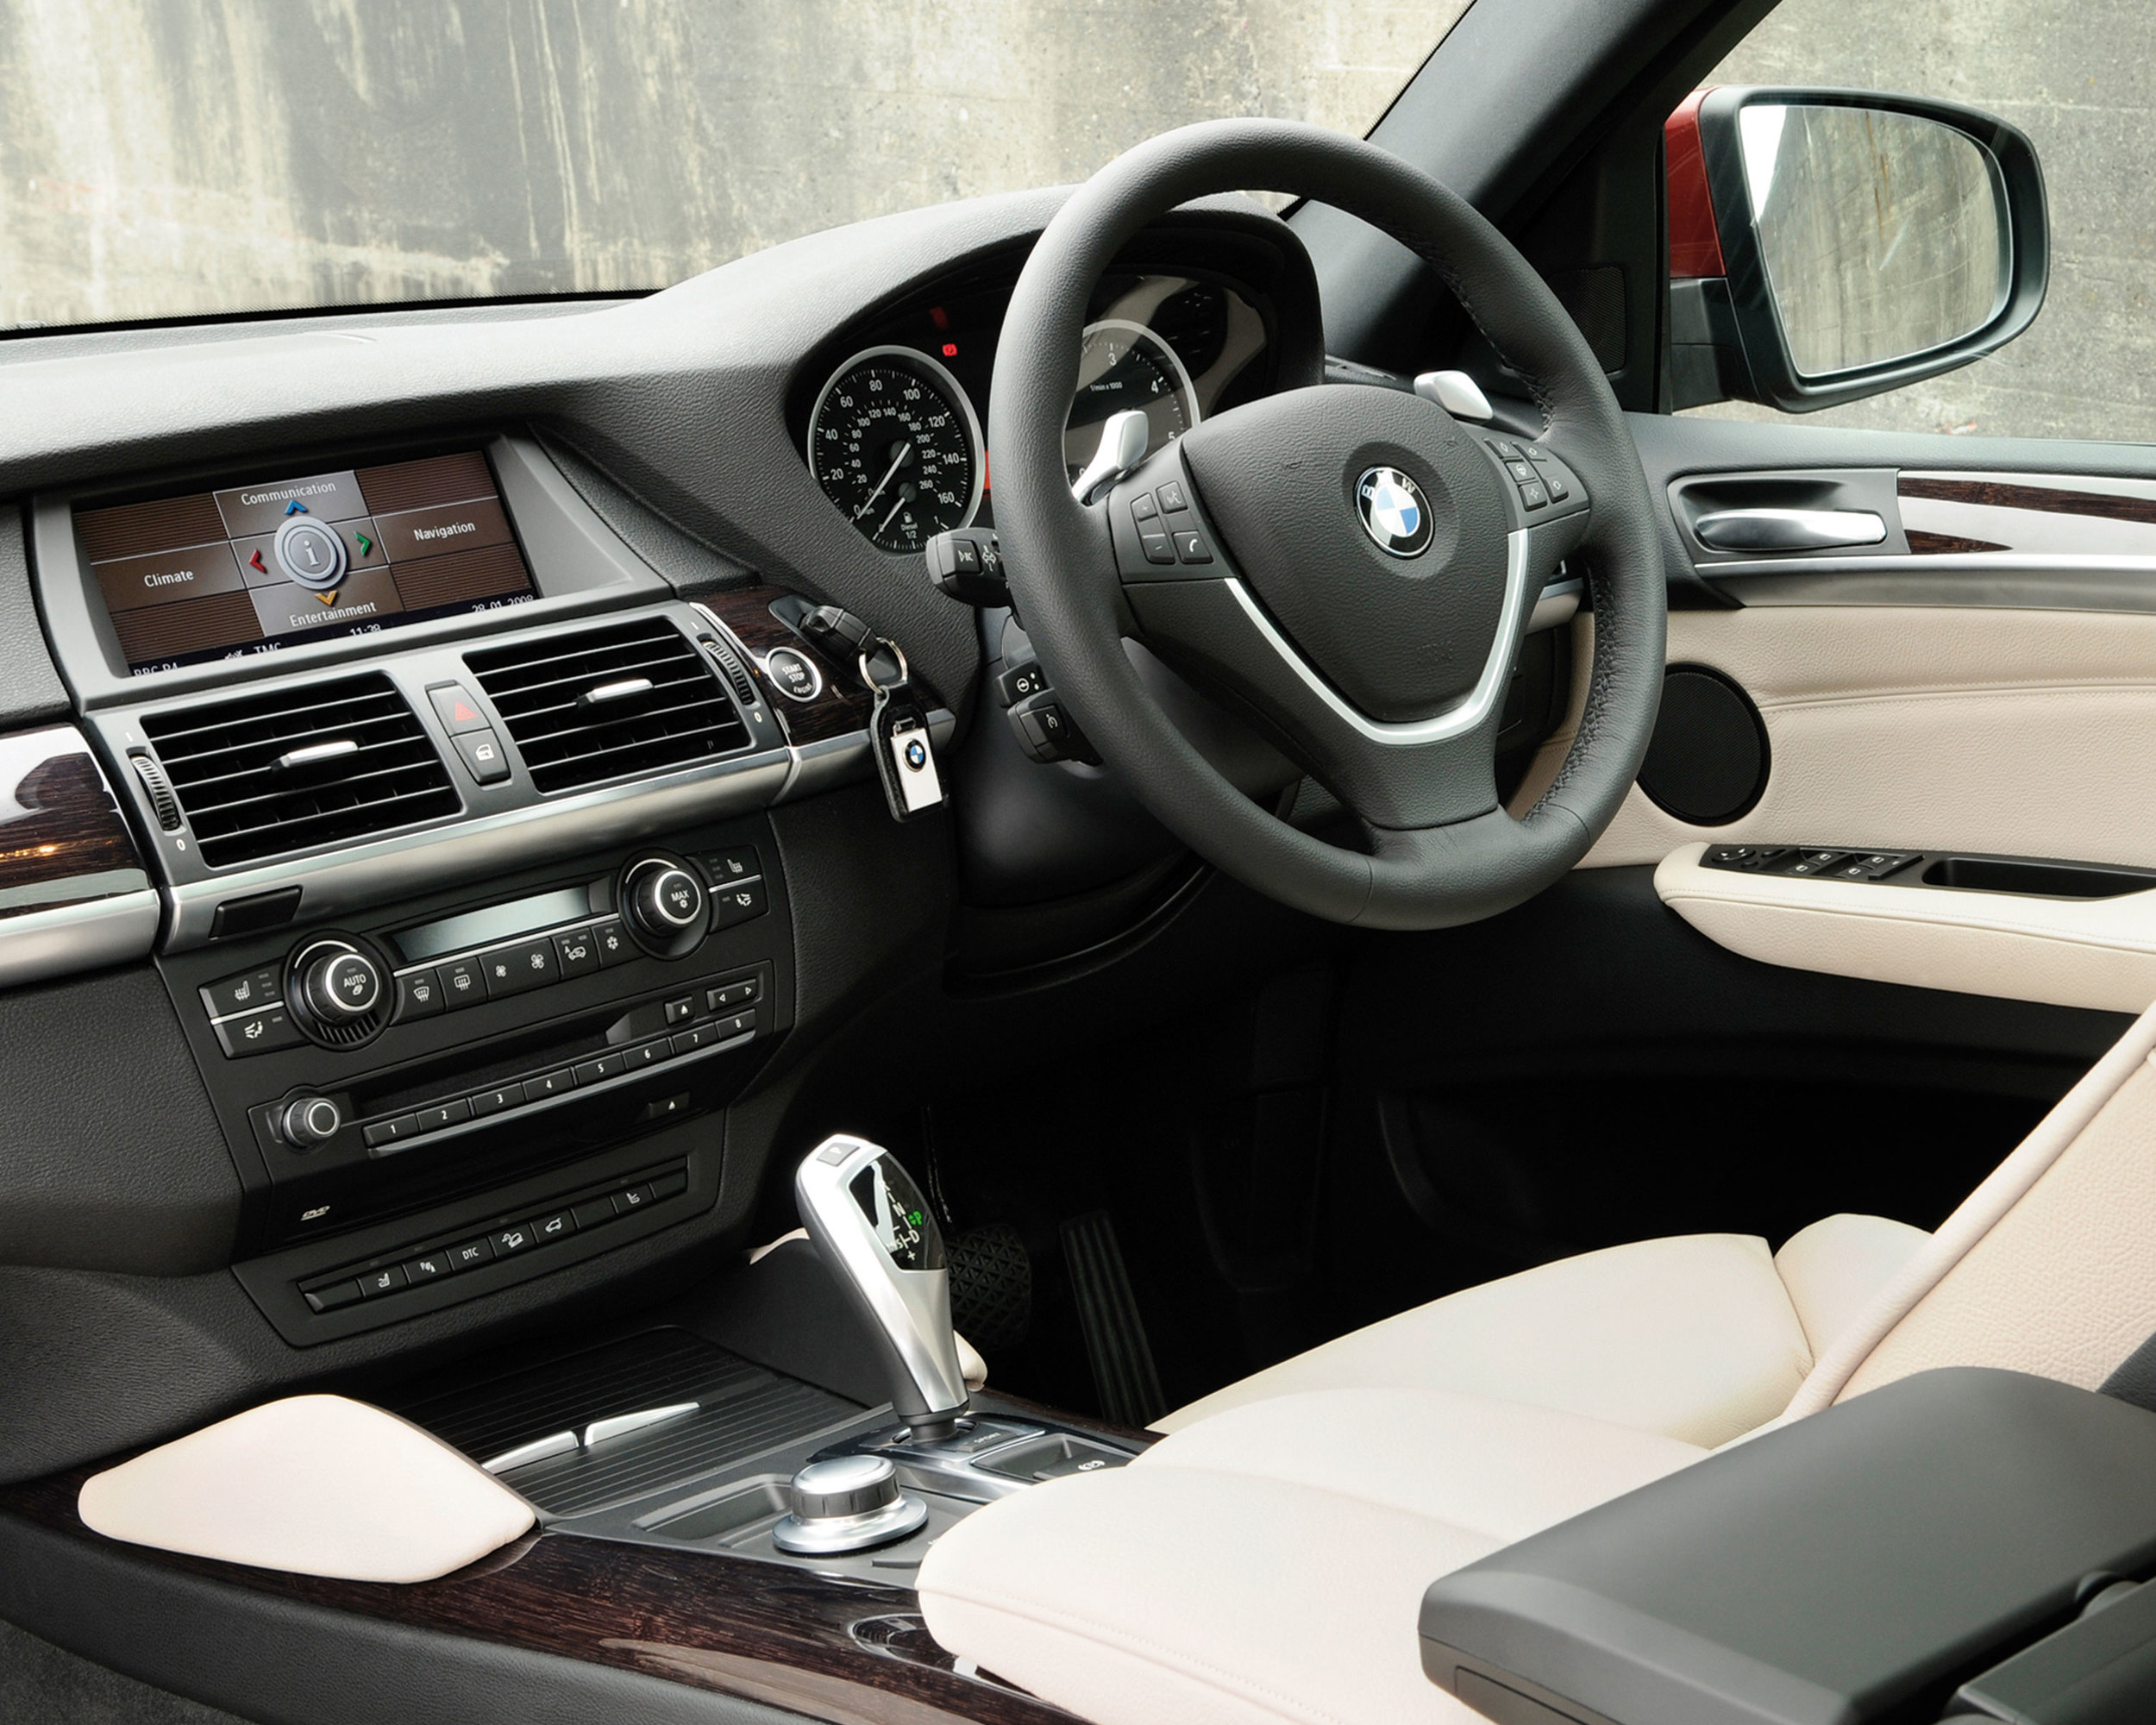 Ремонт x6. БМВ x6 XDRIVE 35d. BMW x6 2008 Interior. BMW x6 XDRIVE 35i, 2008. BMW x6 e71 Interior.